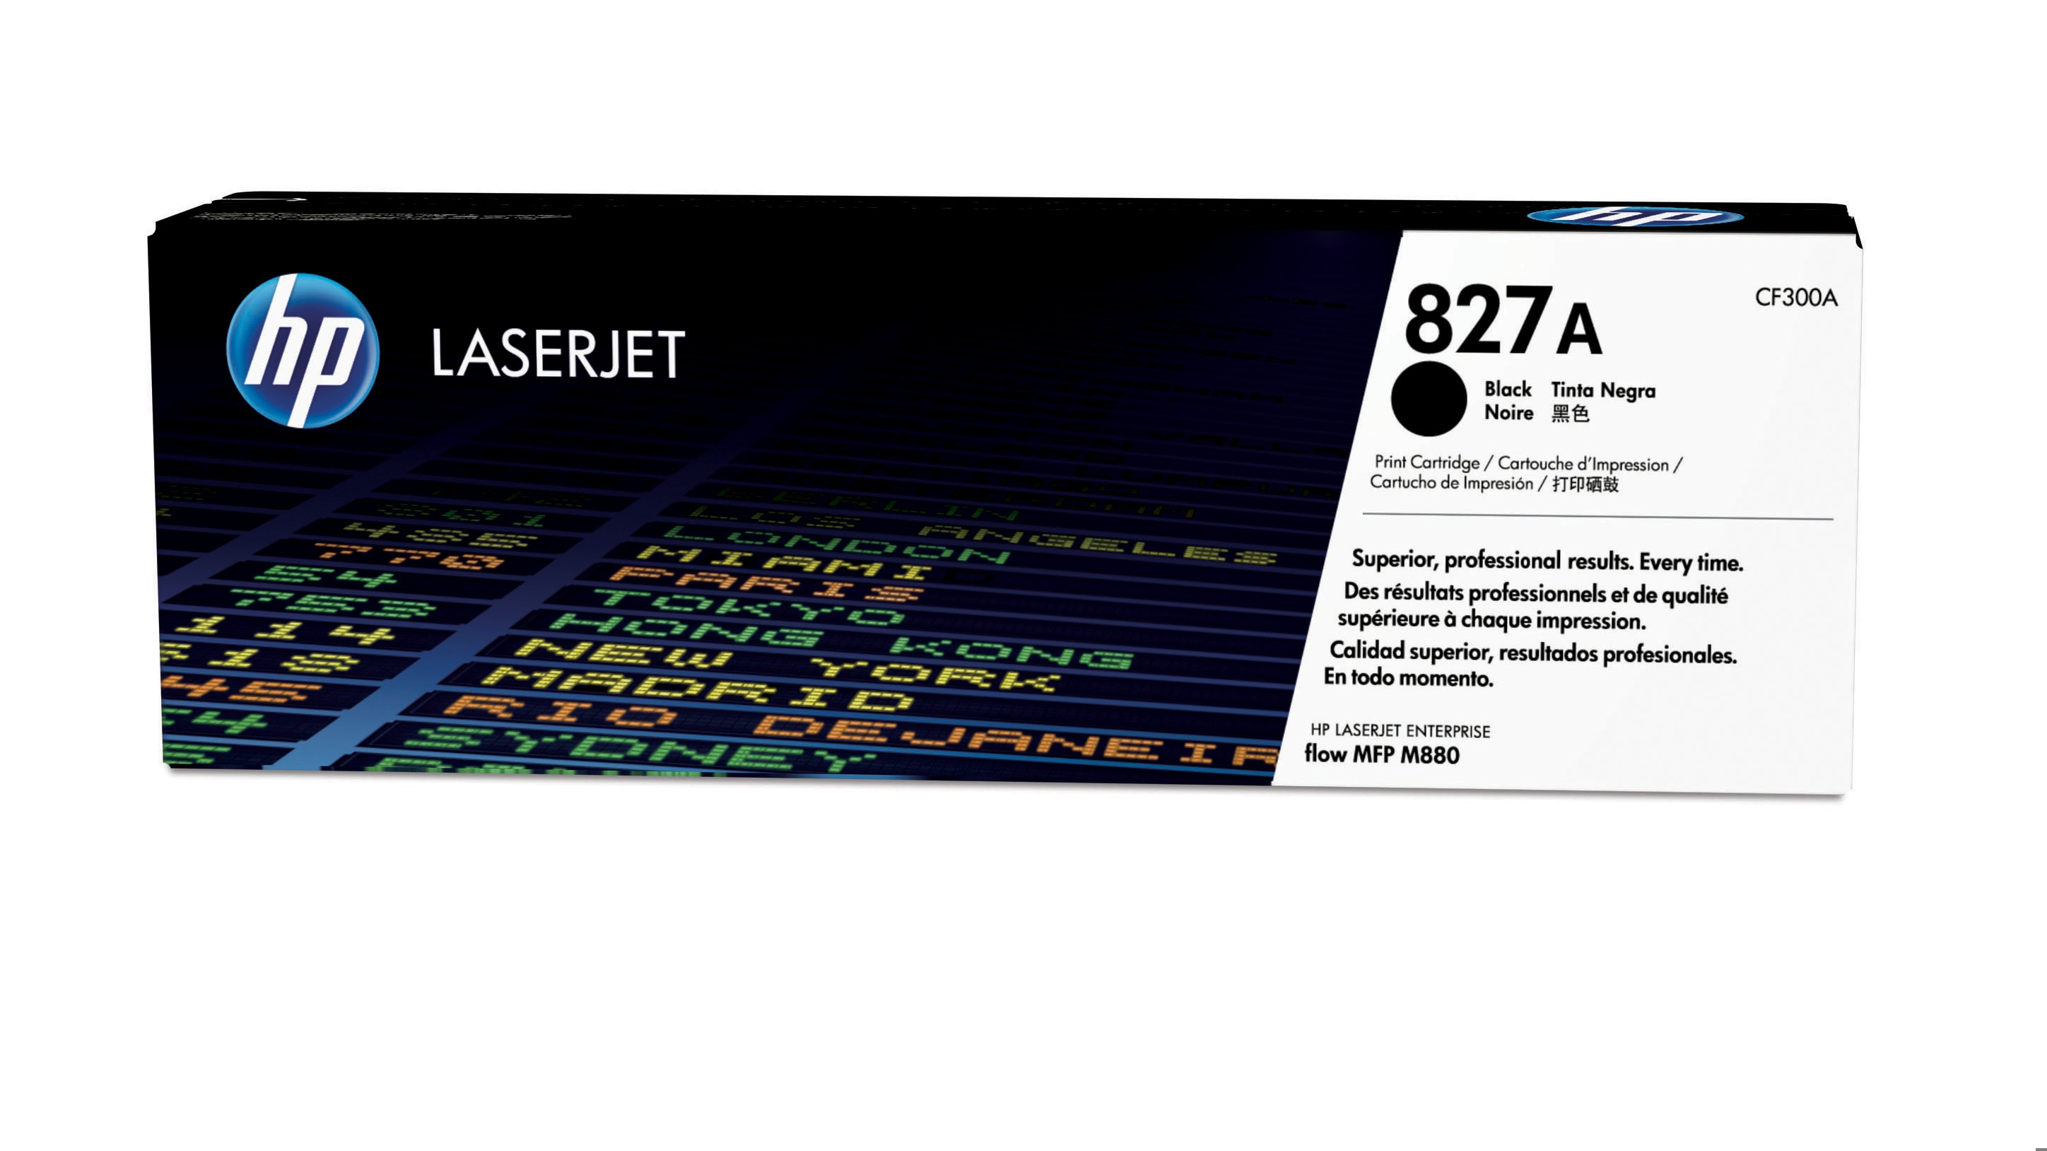 Bild von HP Color LaserJet 827A - Tonereinheit Original - Schwarz - 29.500 Seiten